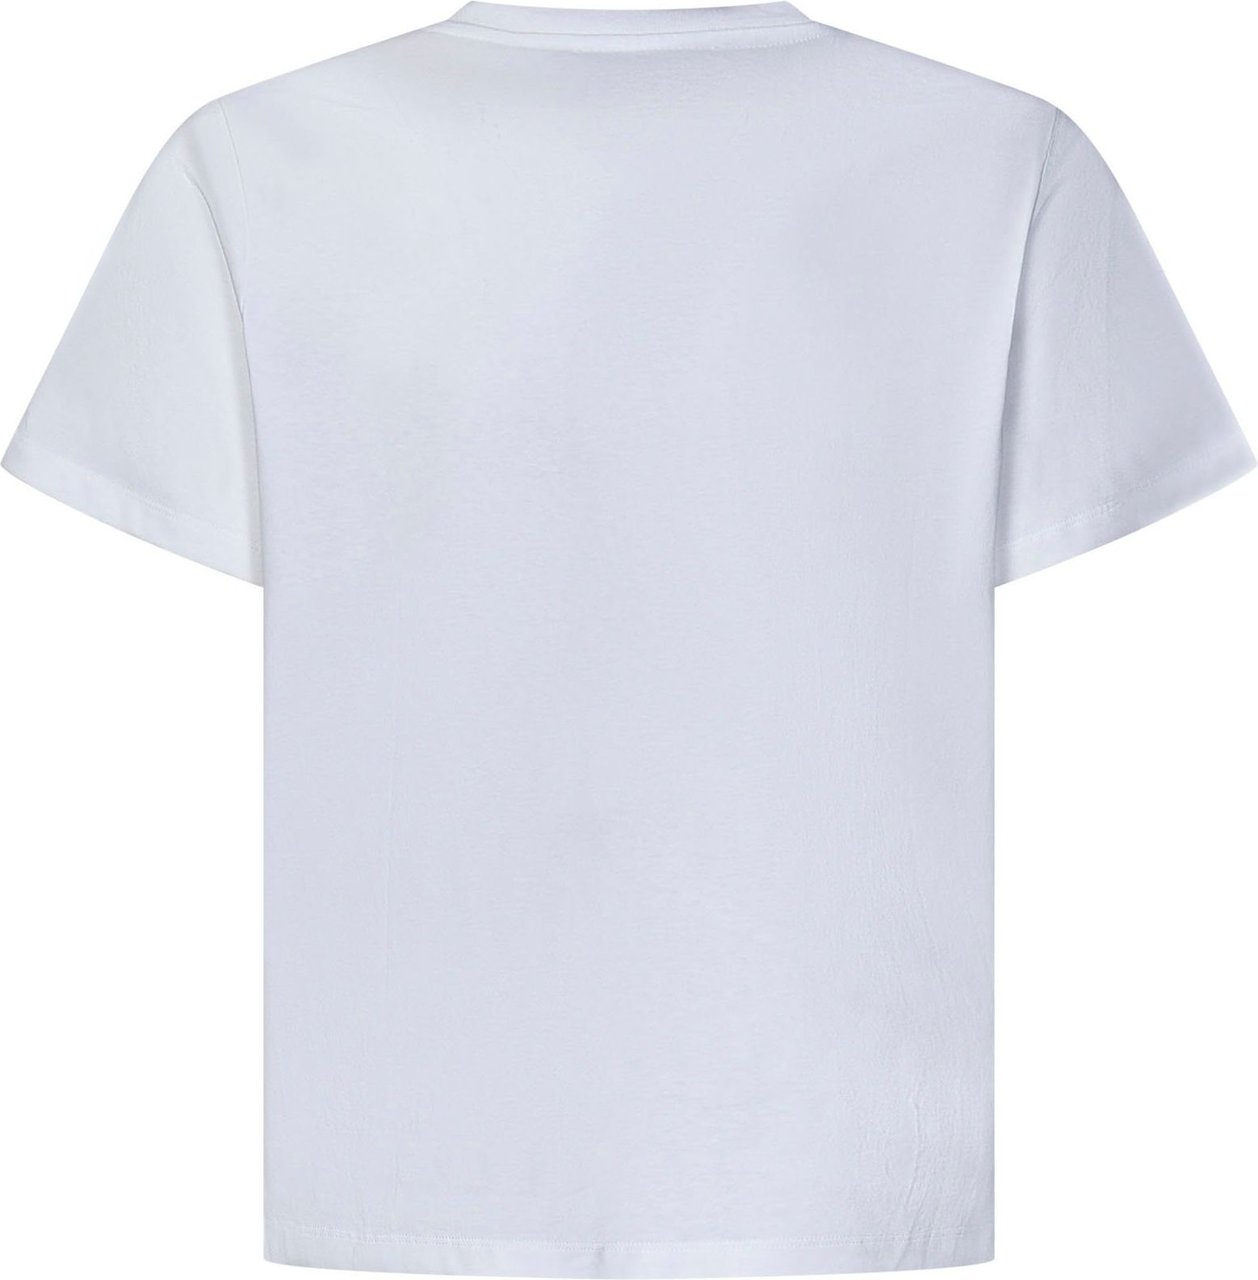 Coperni Coperni T-shirts and Polos White Wit